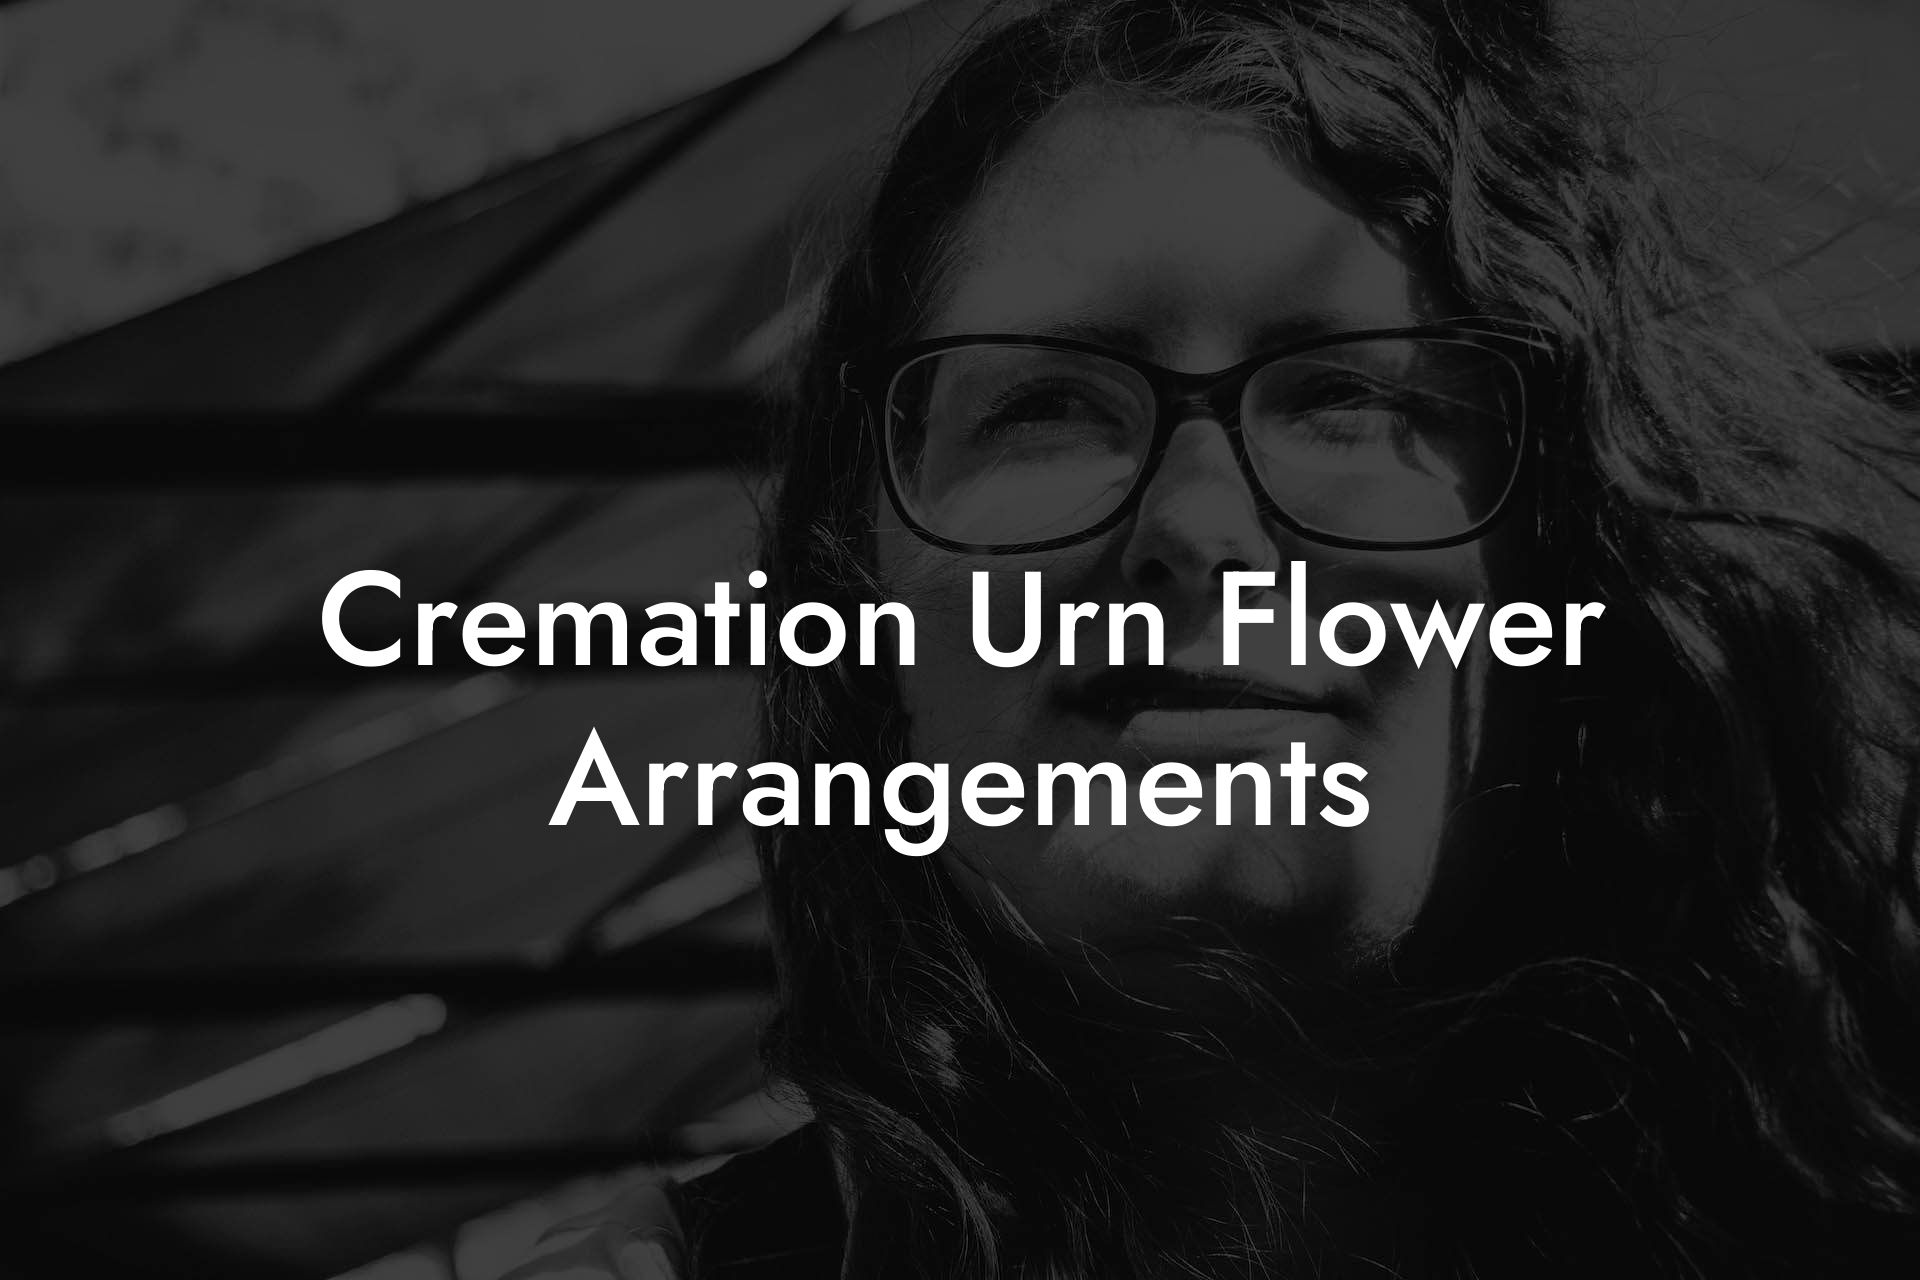 Cremation Urn Flower Arrangements